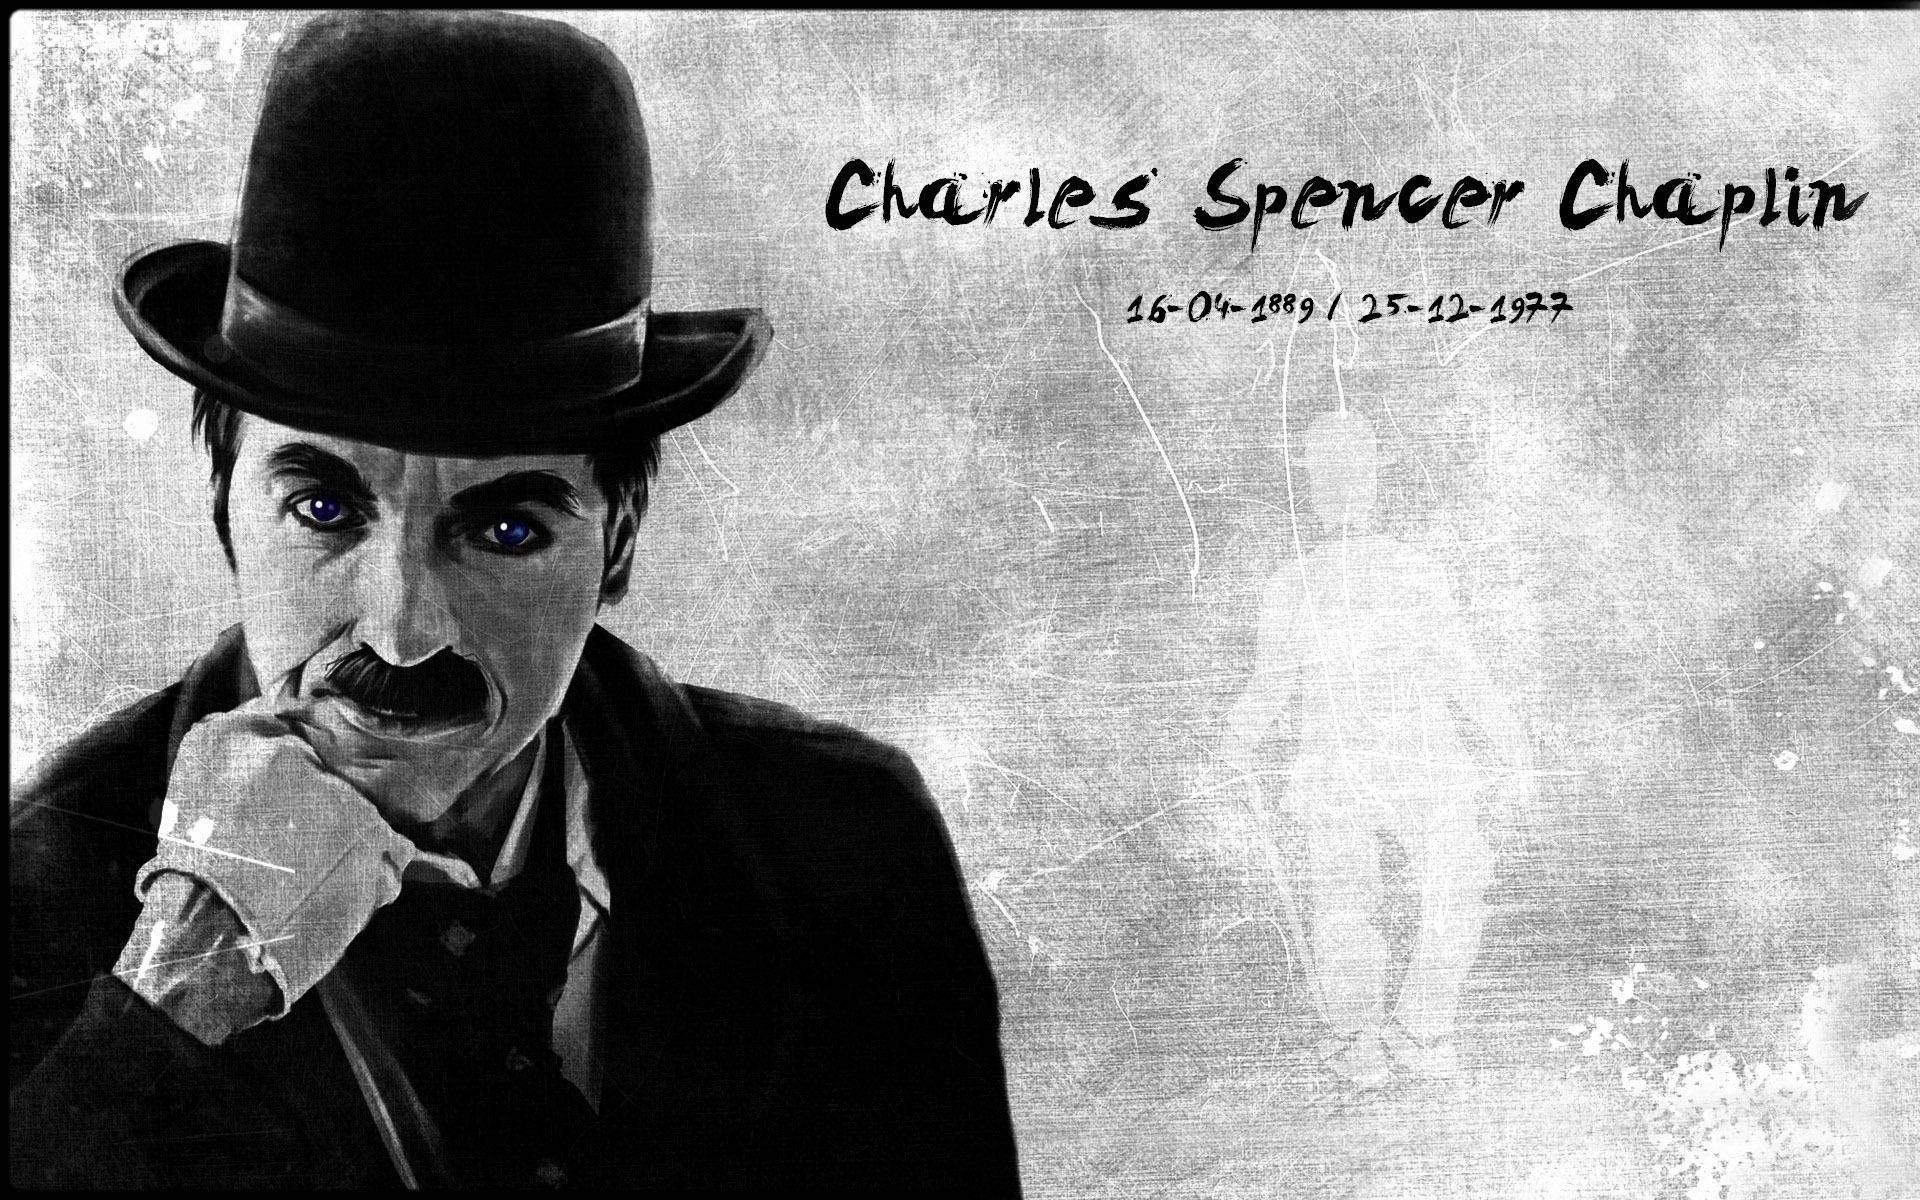 Charlie Chaplin Wallpaper 1152x864 68009 - Baltana